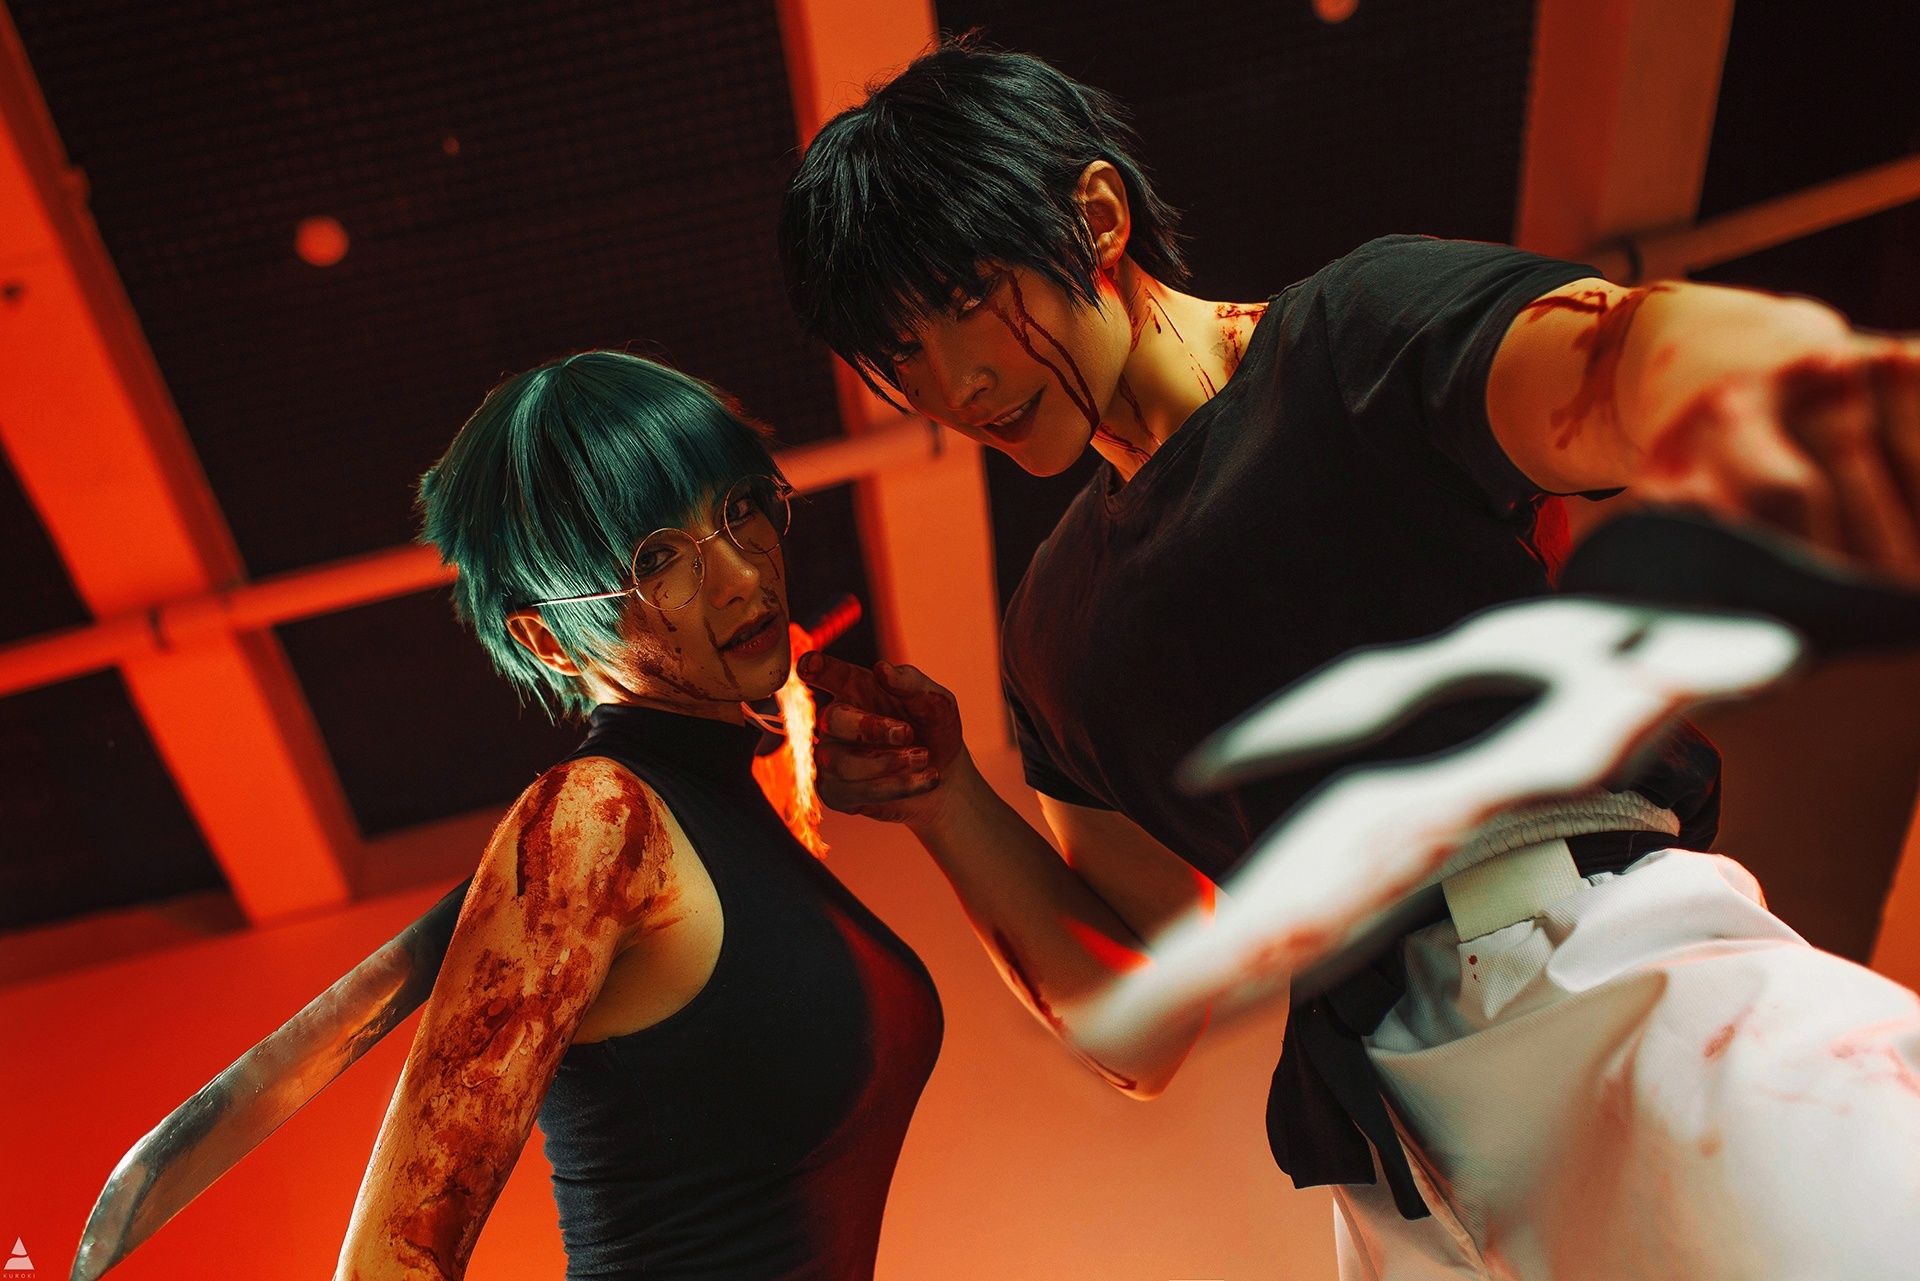 Косплей на персонажей фильма «Магическая битва 0.». Косплееры: Azula и Hashi Artful. Фотограф: Tuturu.